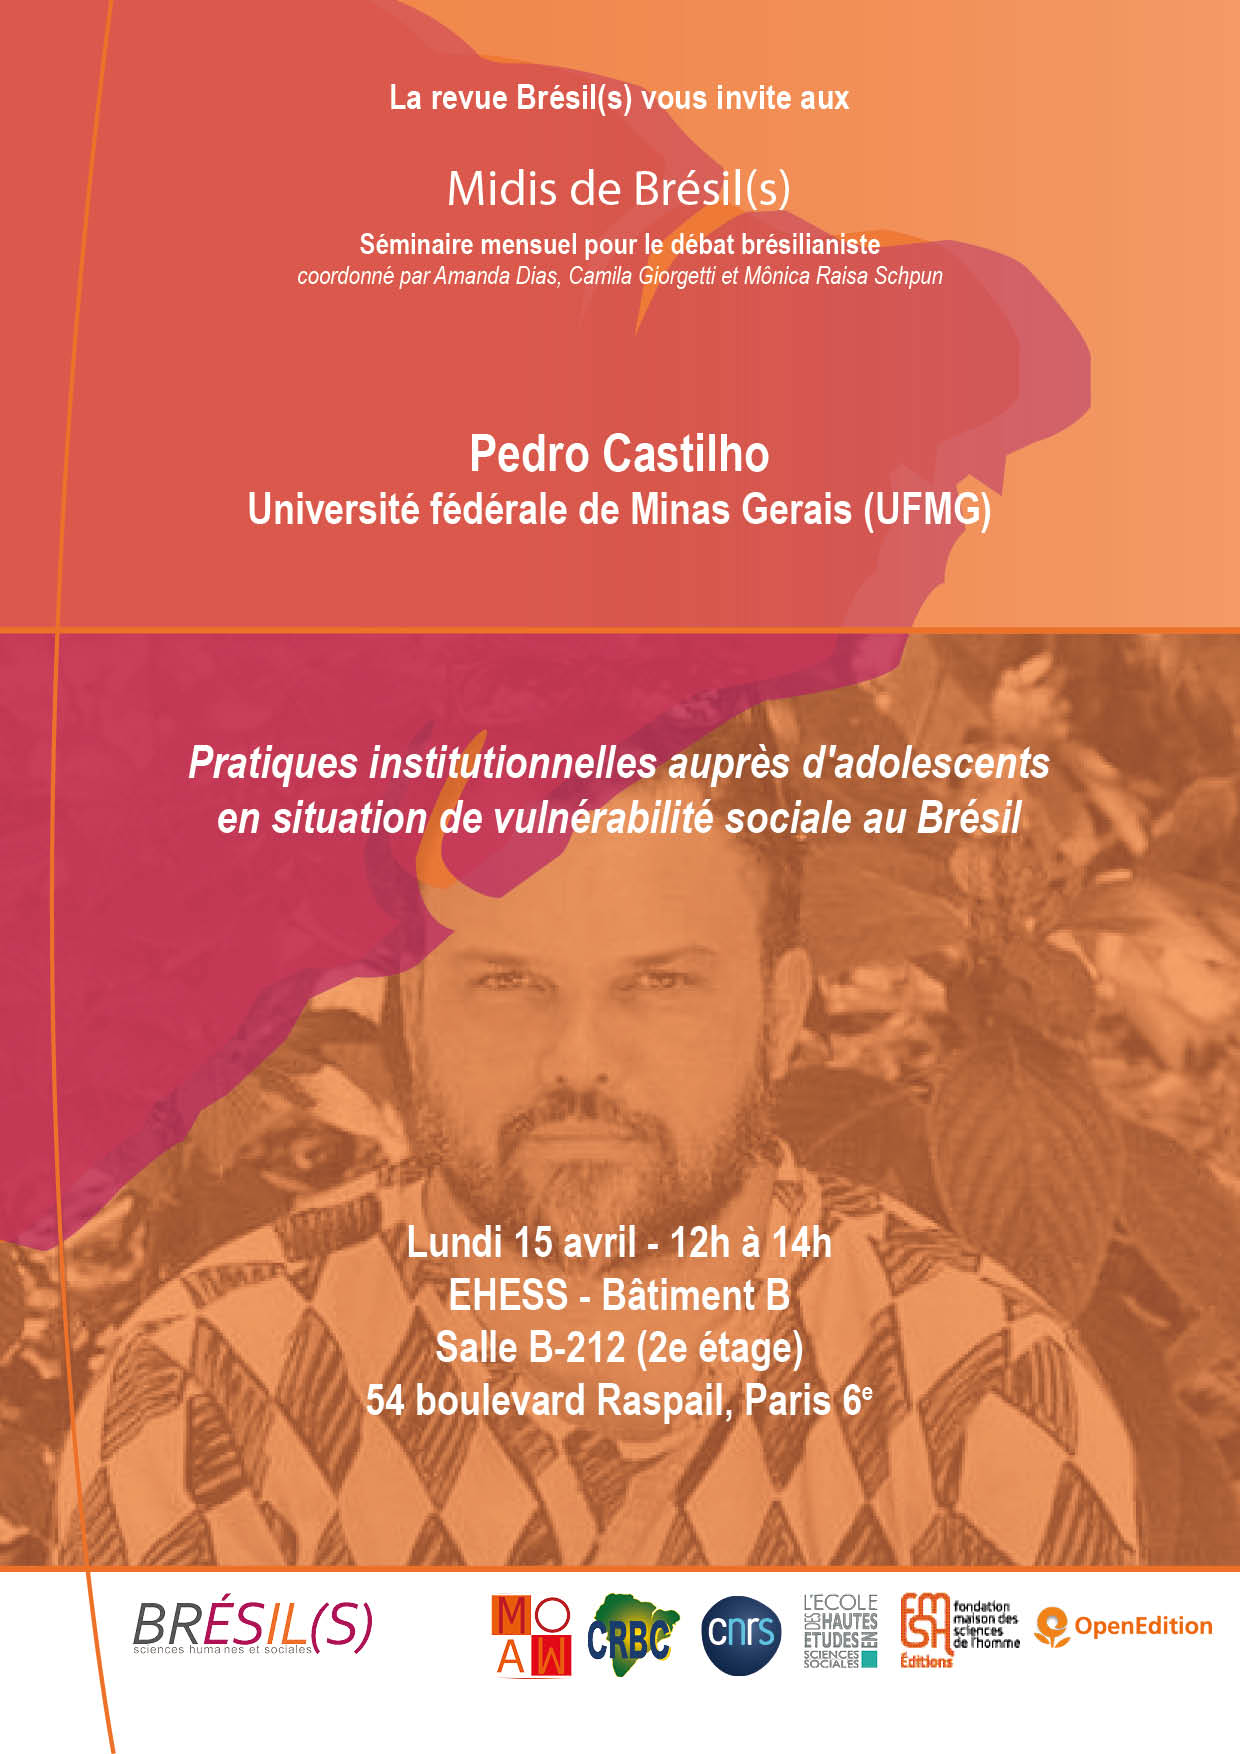 Les Midis de Brésil(s) - Pedro Castilho, professeur à Université fédérale de Minas Gerais (UFMG) / Pratiques institutionnelles auprès d'adolescents en situation de vulnérabilité sociale au Brésil